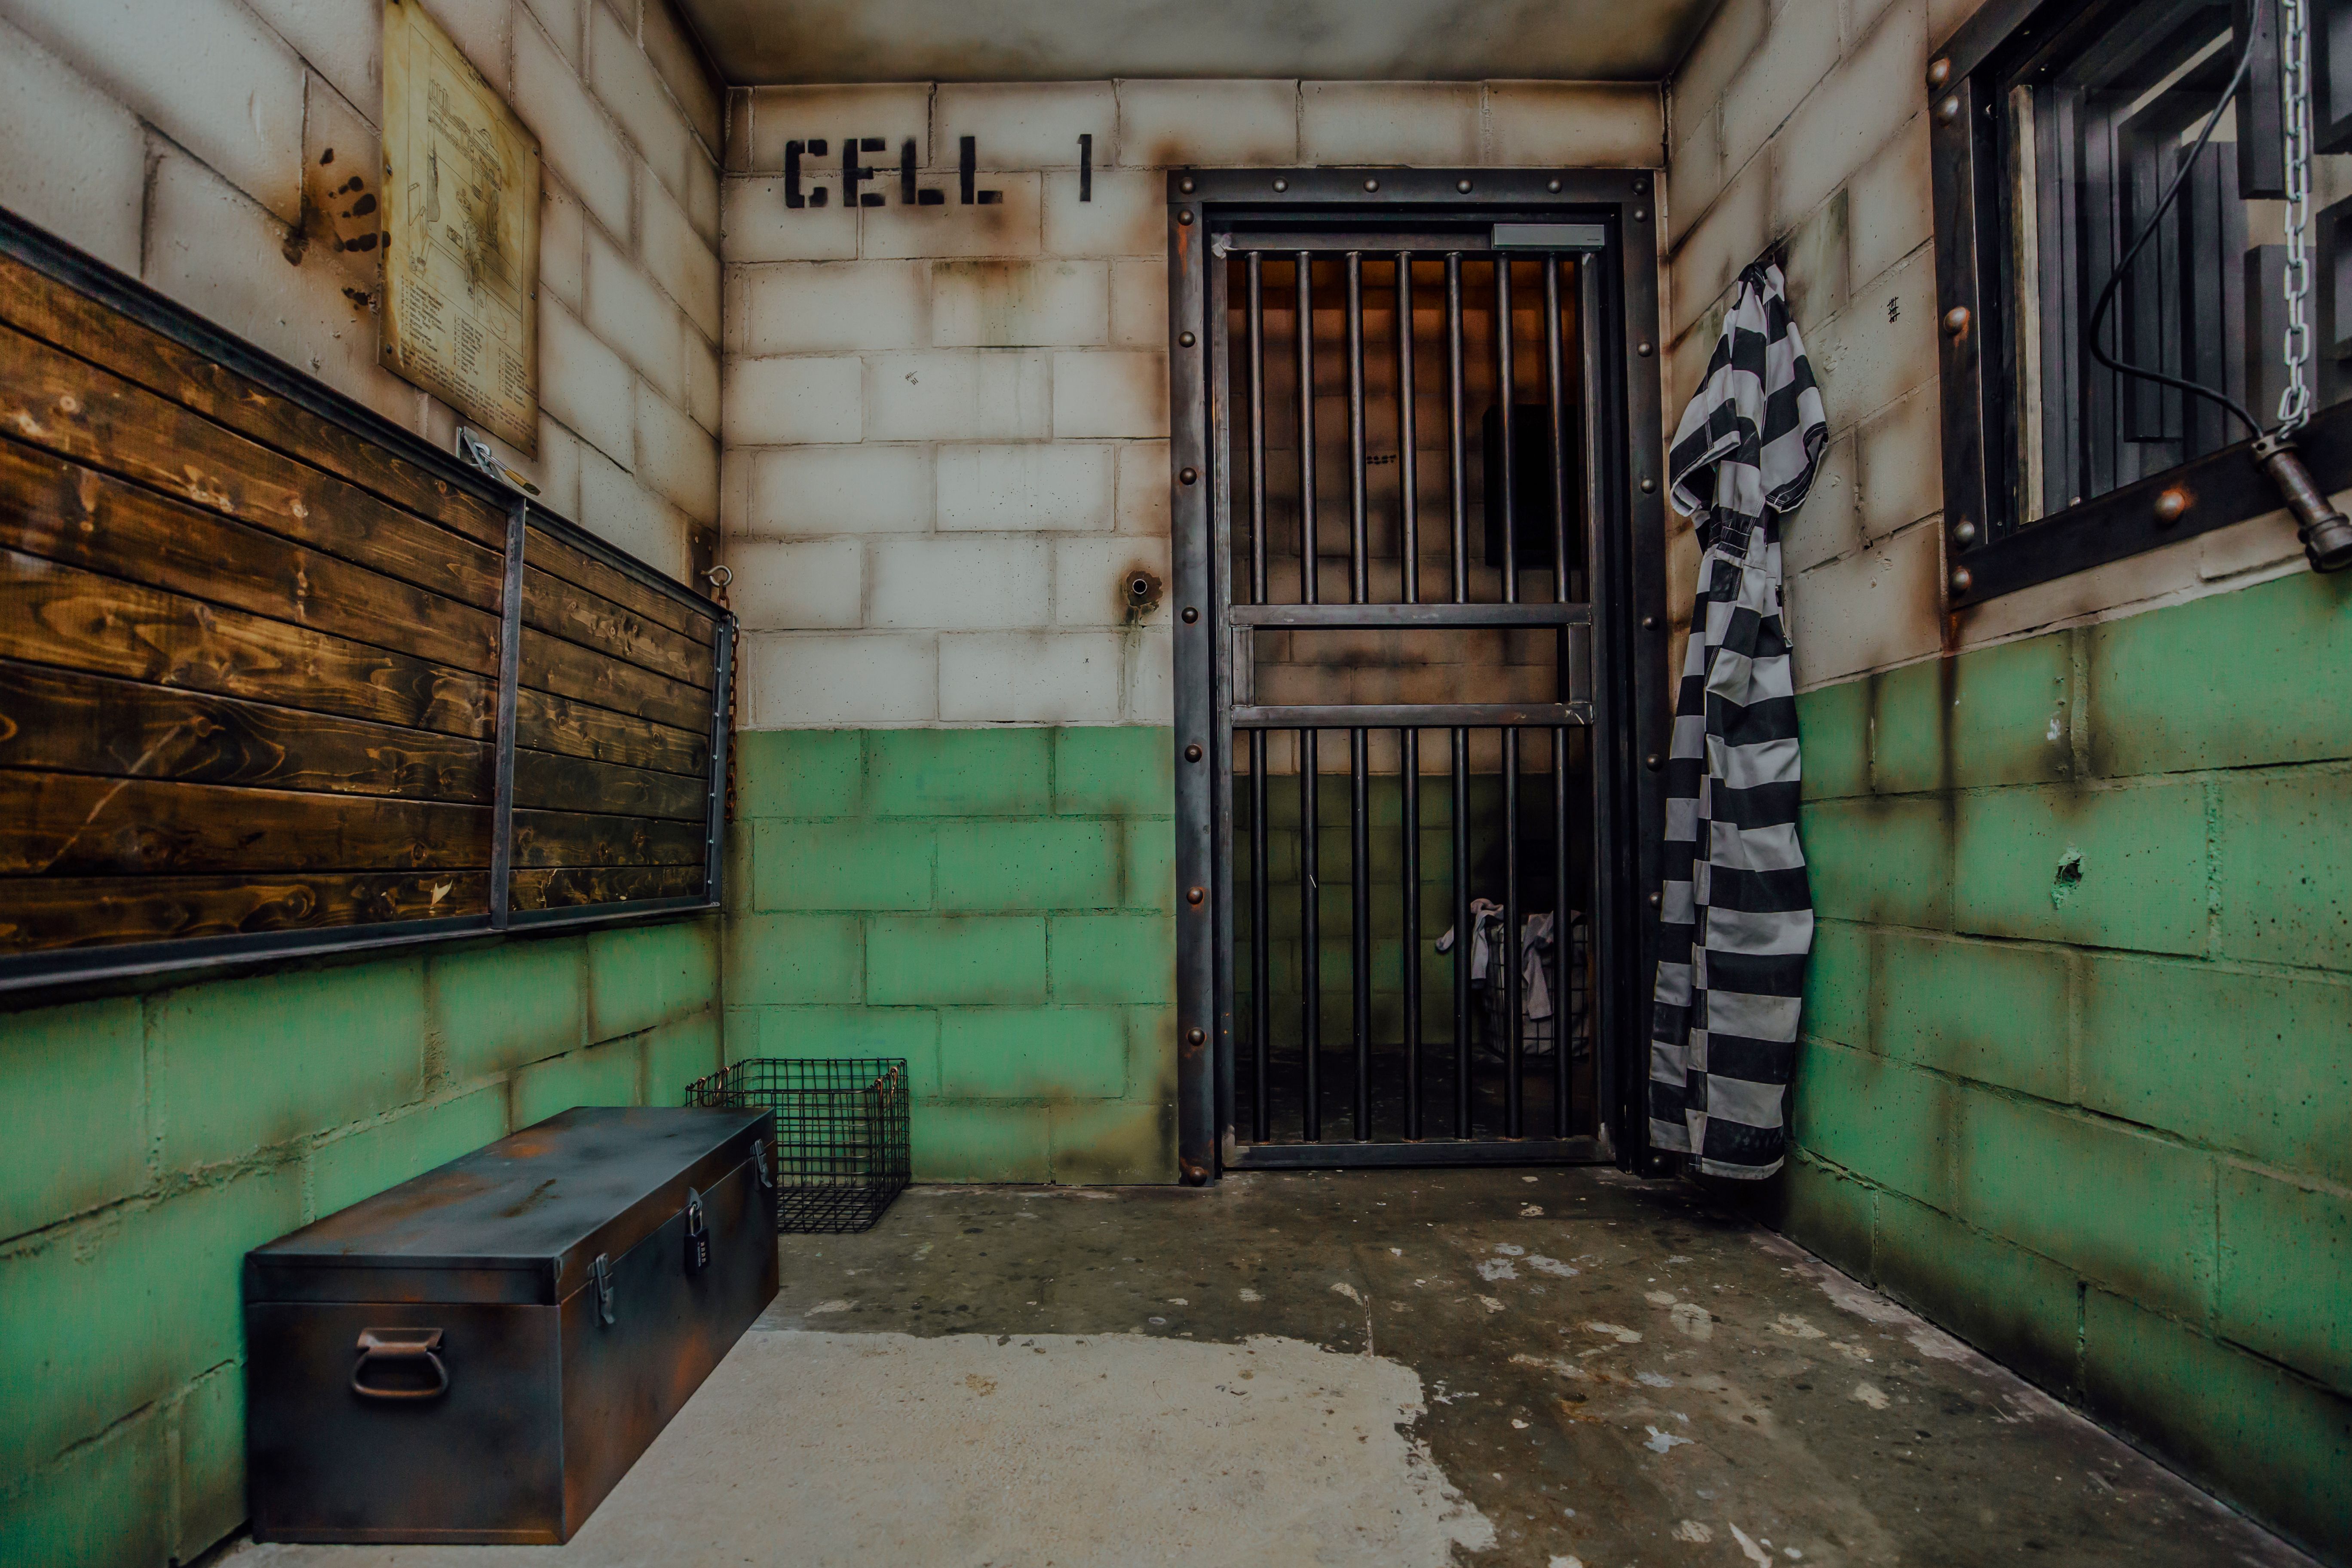 Prisoner Escape - Puzzles unblocked games